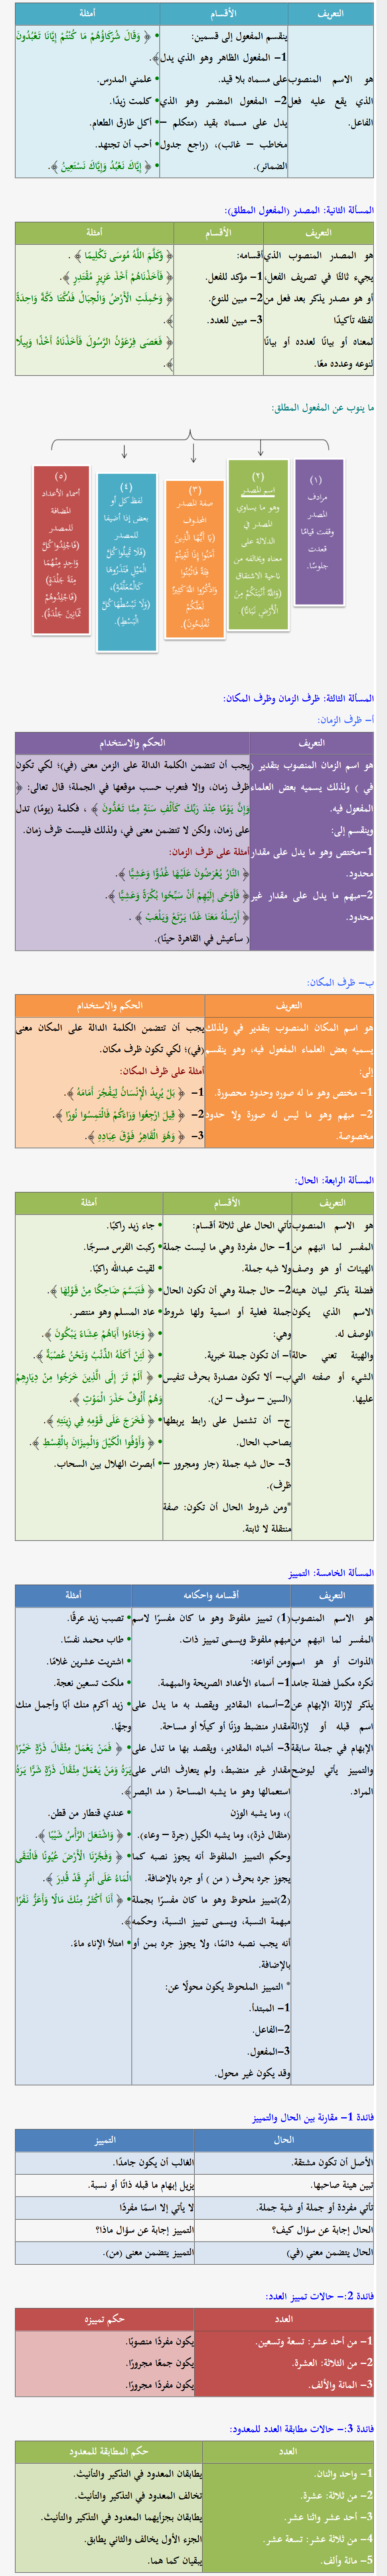 منصوبات الأسماء في اللغة العربية